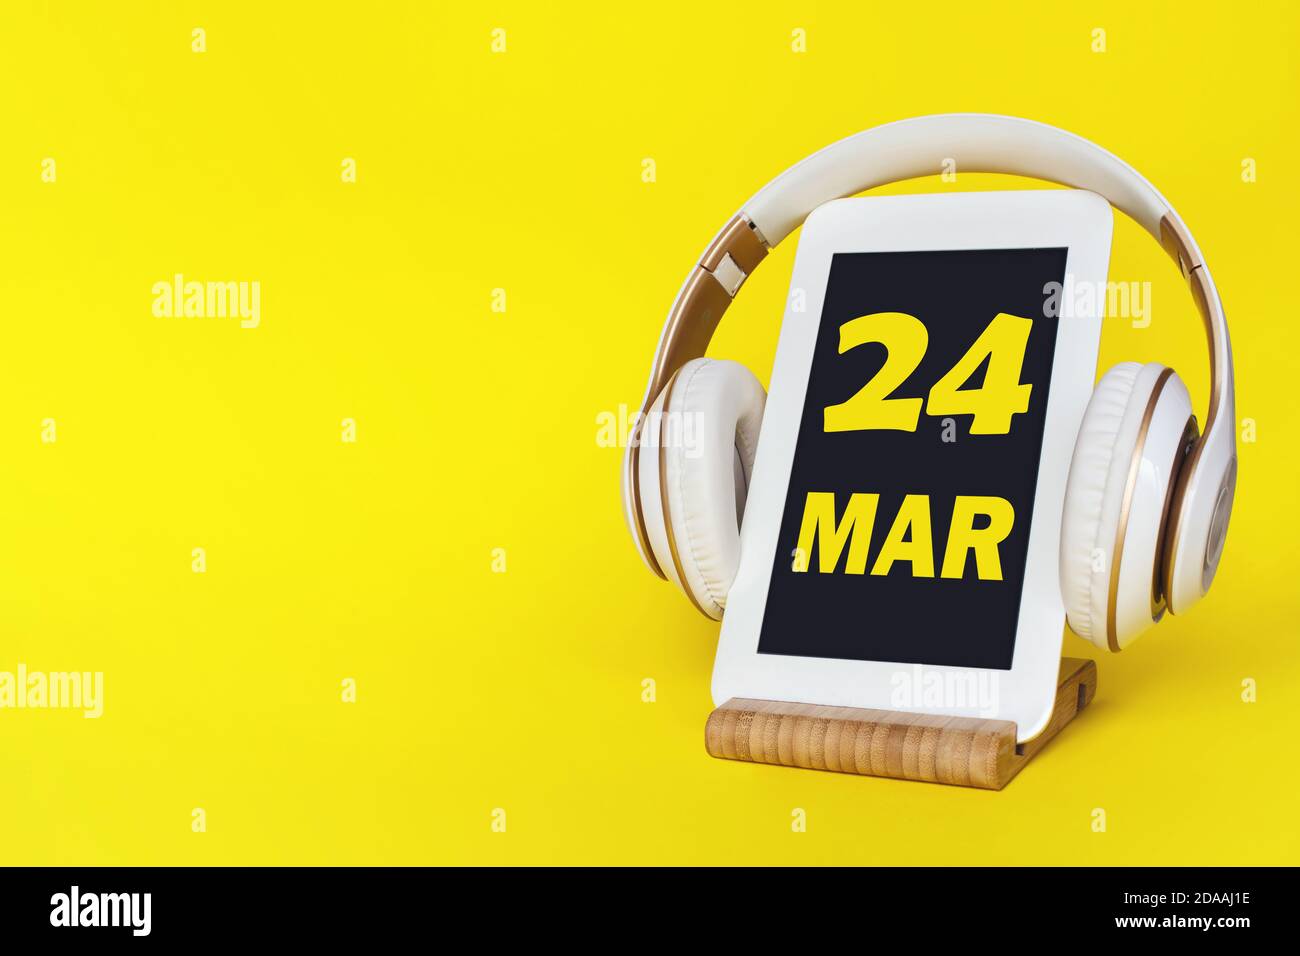 März. Tag 24 des Monats, Kalenderdatum. Elegante Kopfhörer und modernes Tablet auf gelbem Hintergrund. Leerzeichen für Text. Konzept Bildung, Technologie, Stockfoto